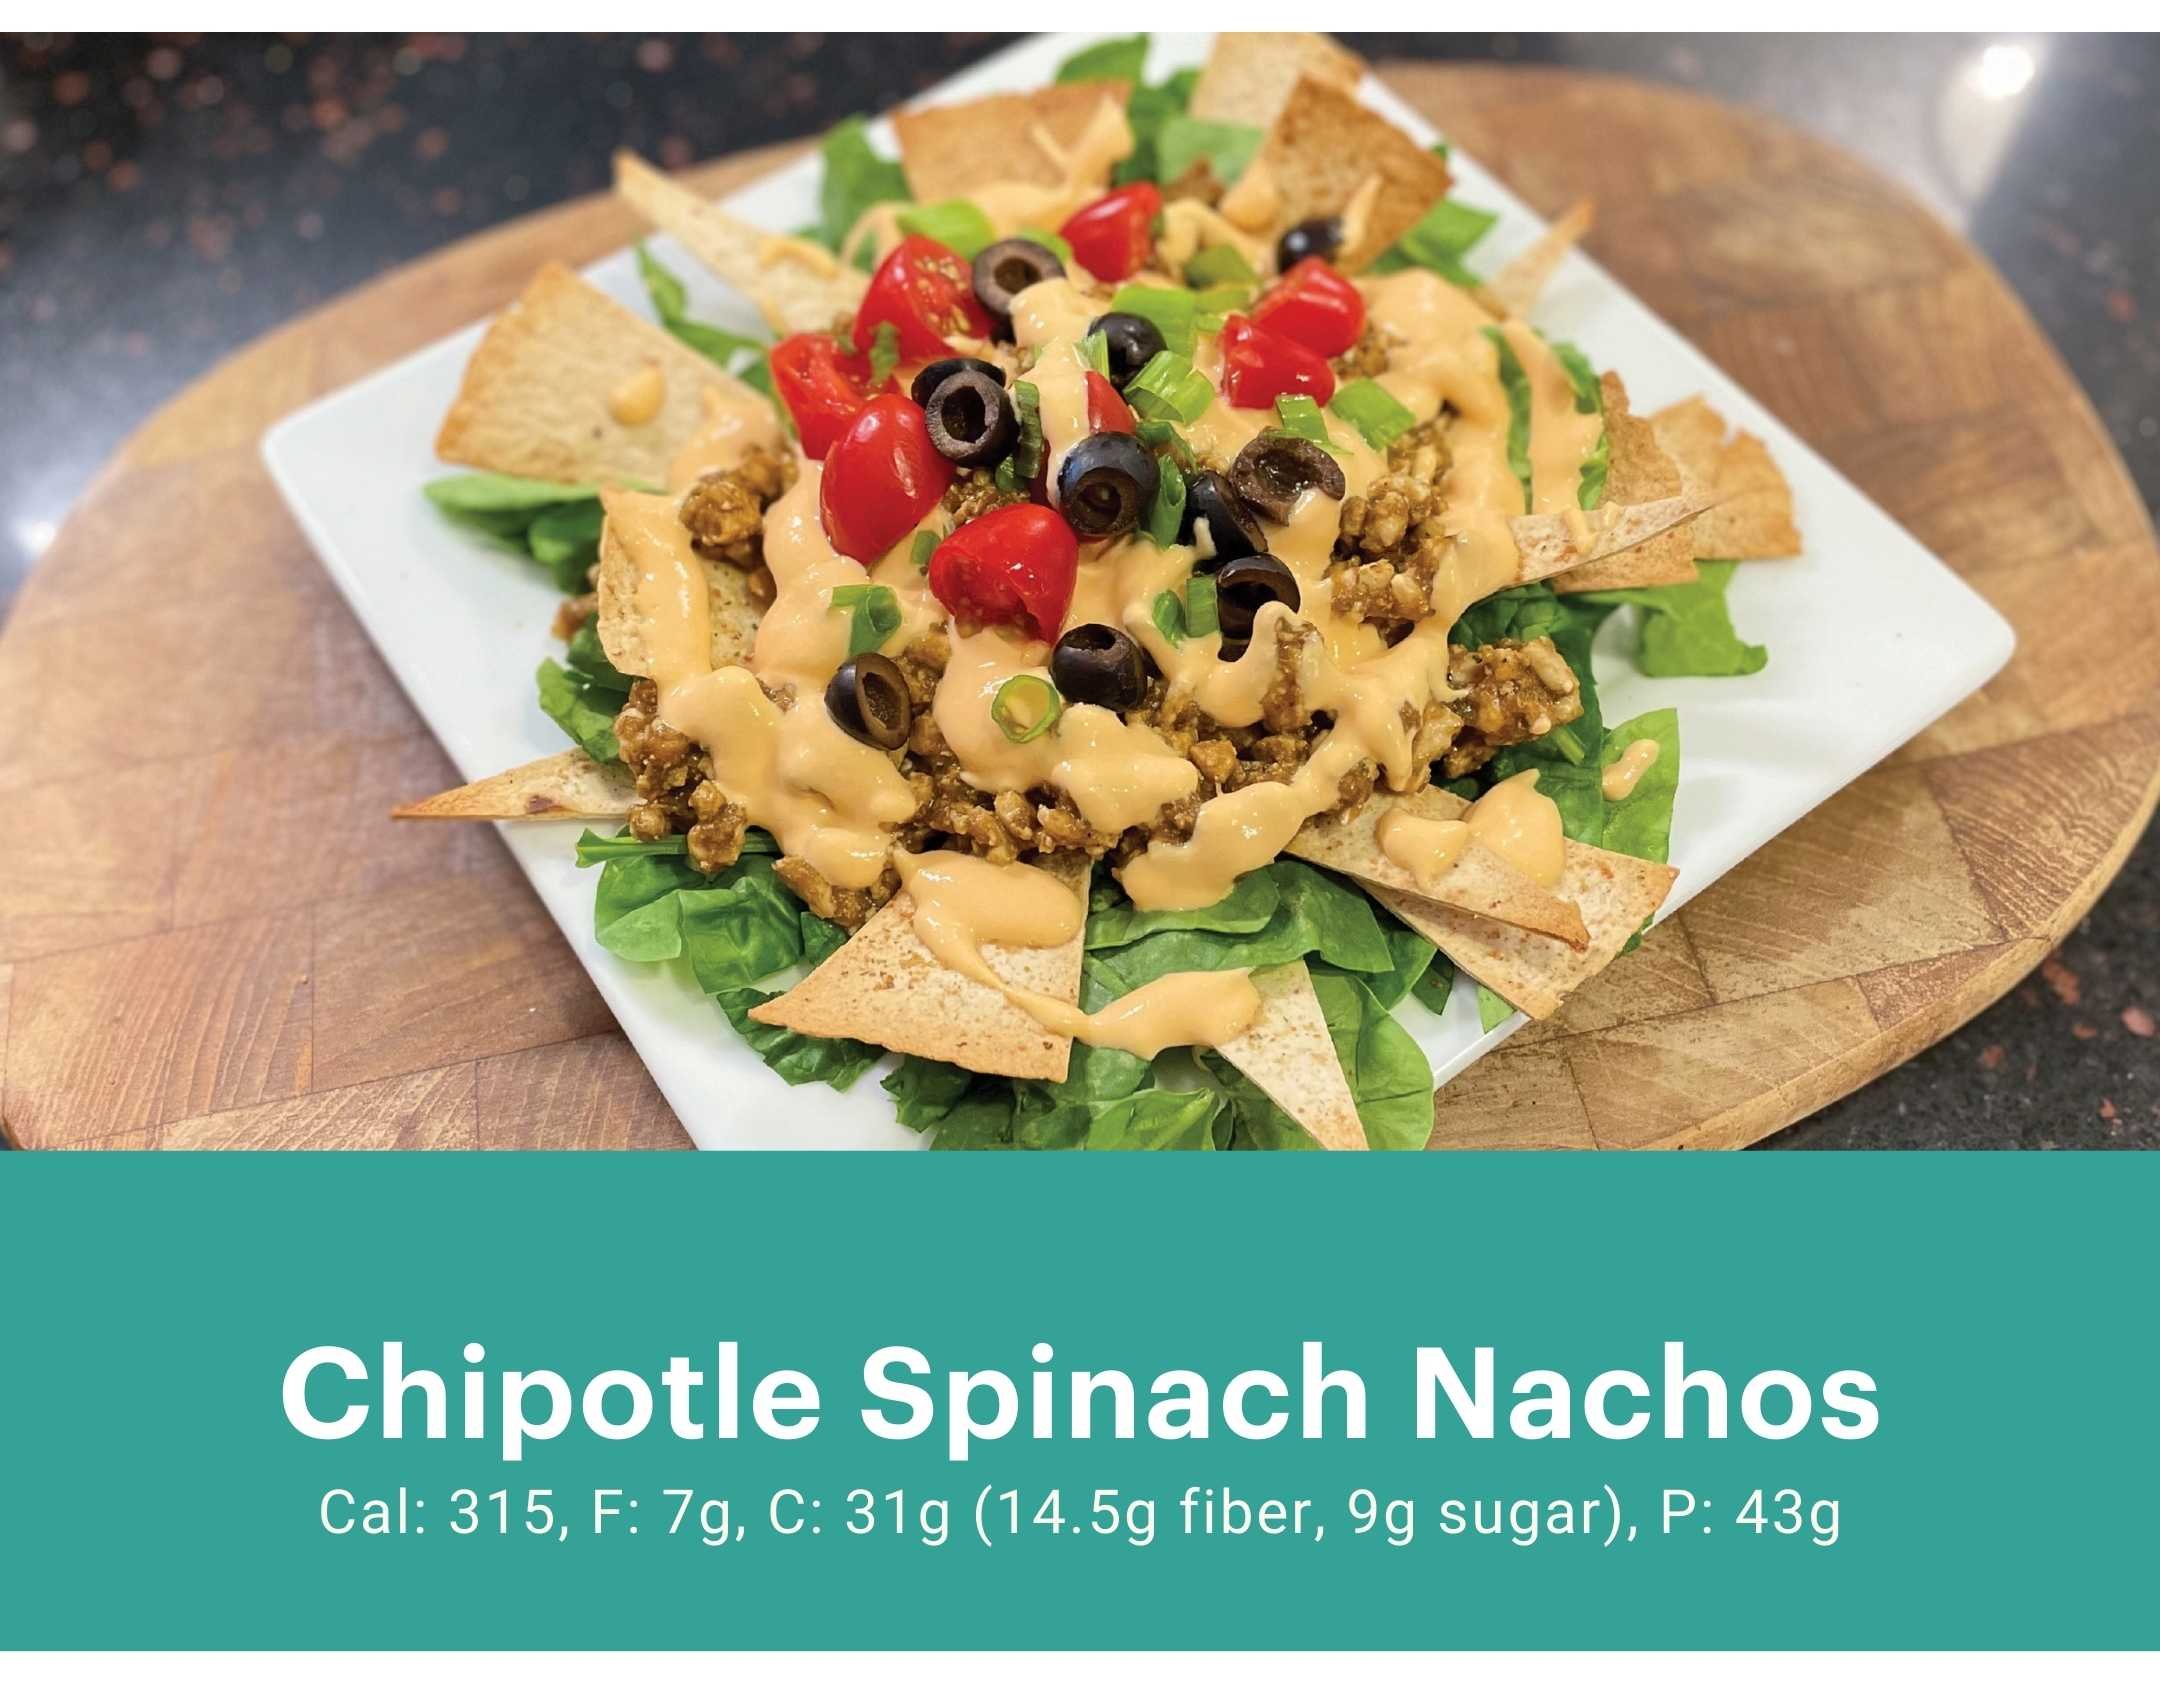 Chipotle Spinach Nachos.jpg